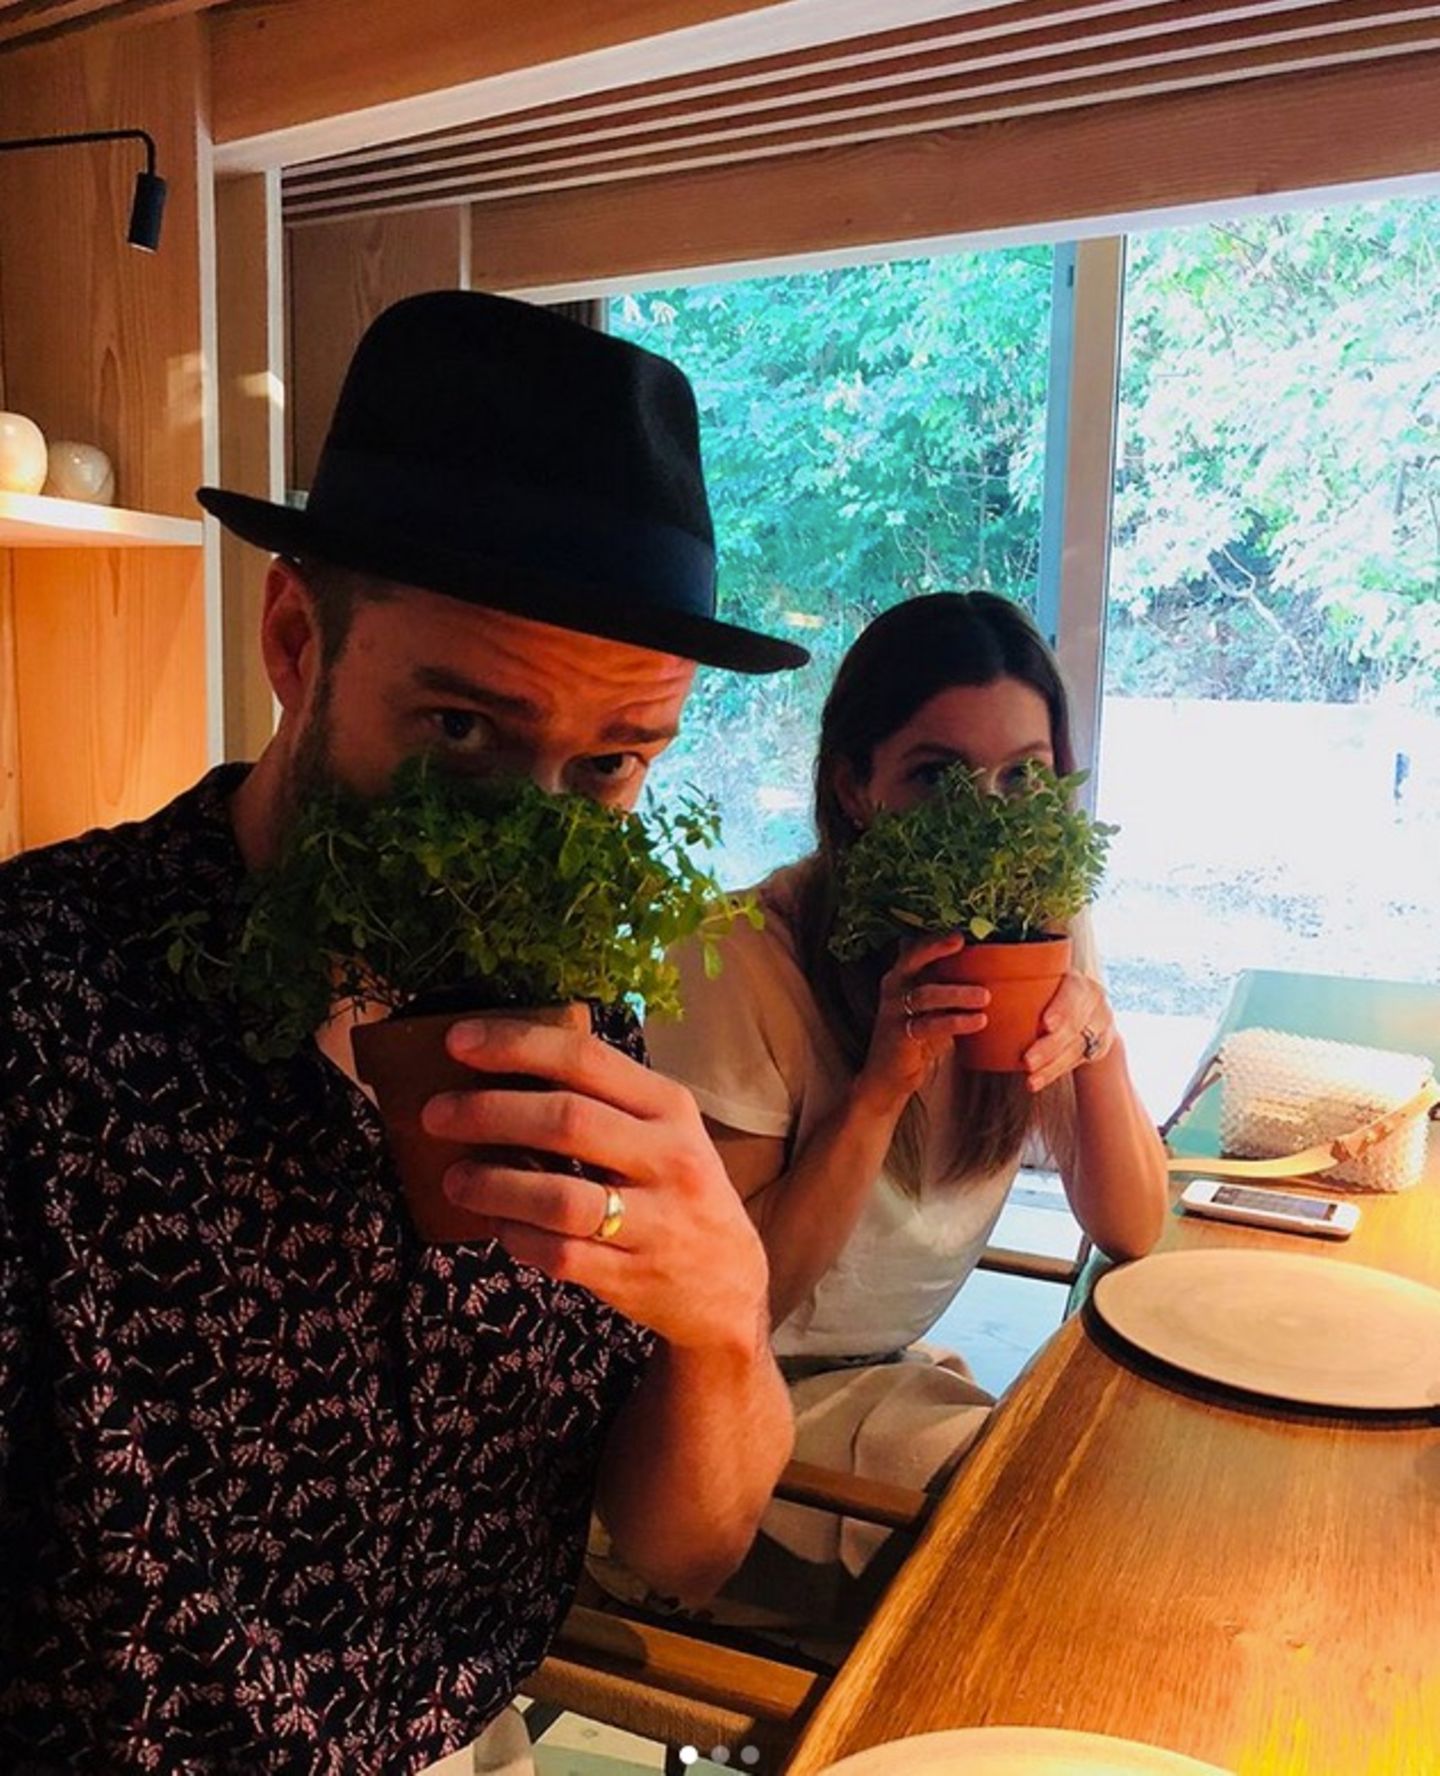 5. August 2018  Vor dem Dinner schnüffeln Jessica Biel und Justin Timberlake an den Gewürzen. 